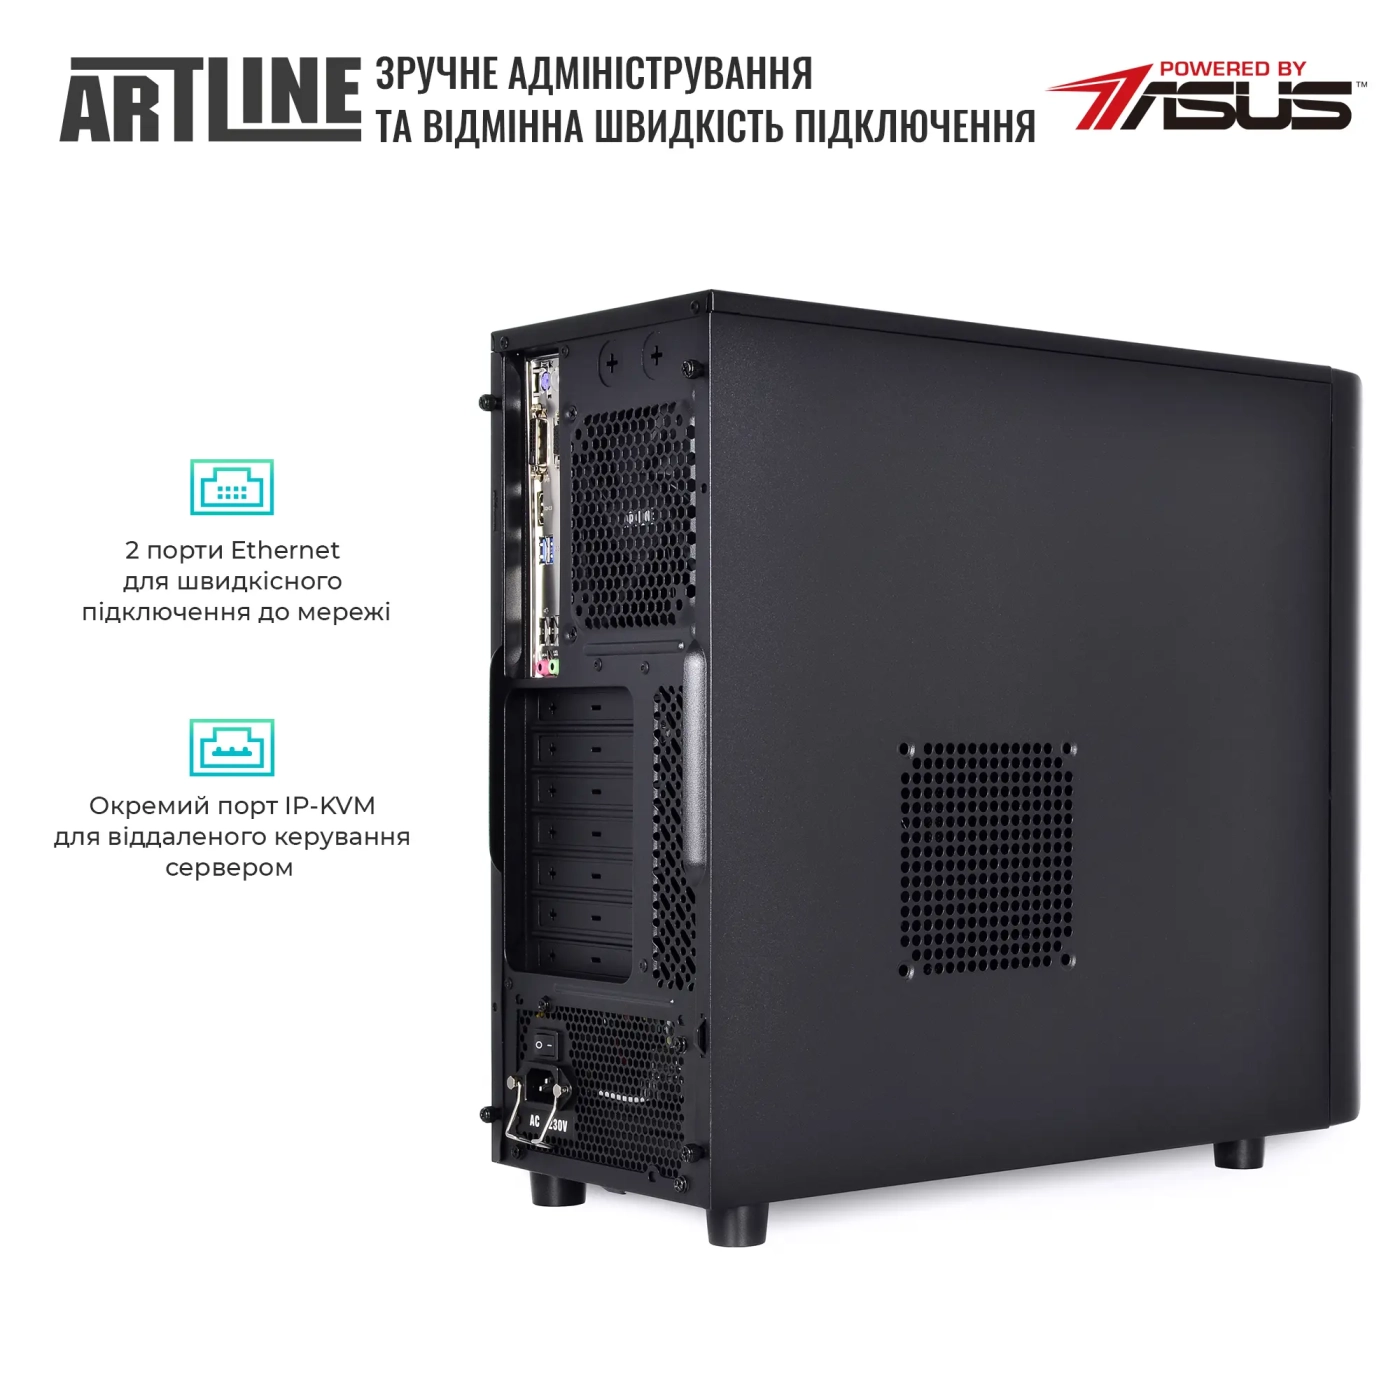 Купить Сервер ARTLINE Business T37 (T37v35) - фото 5